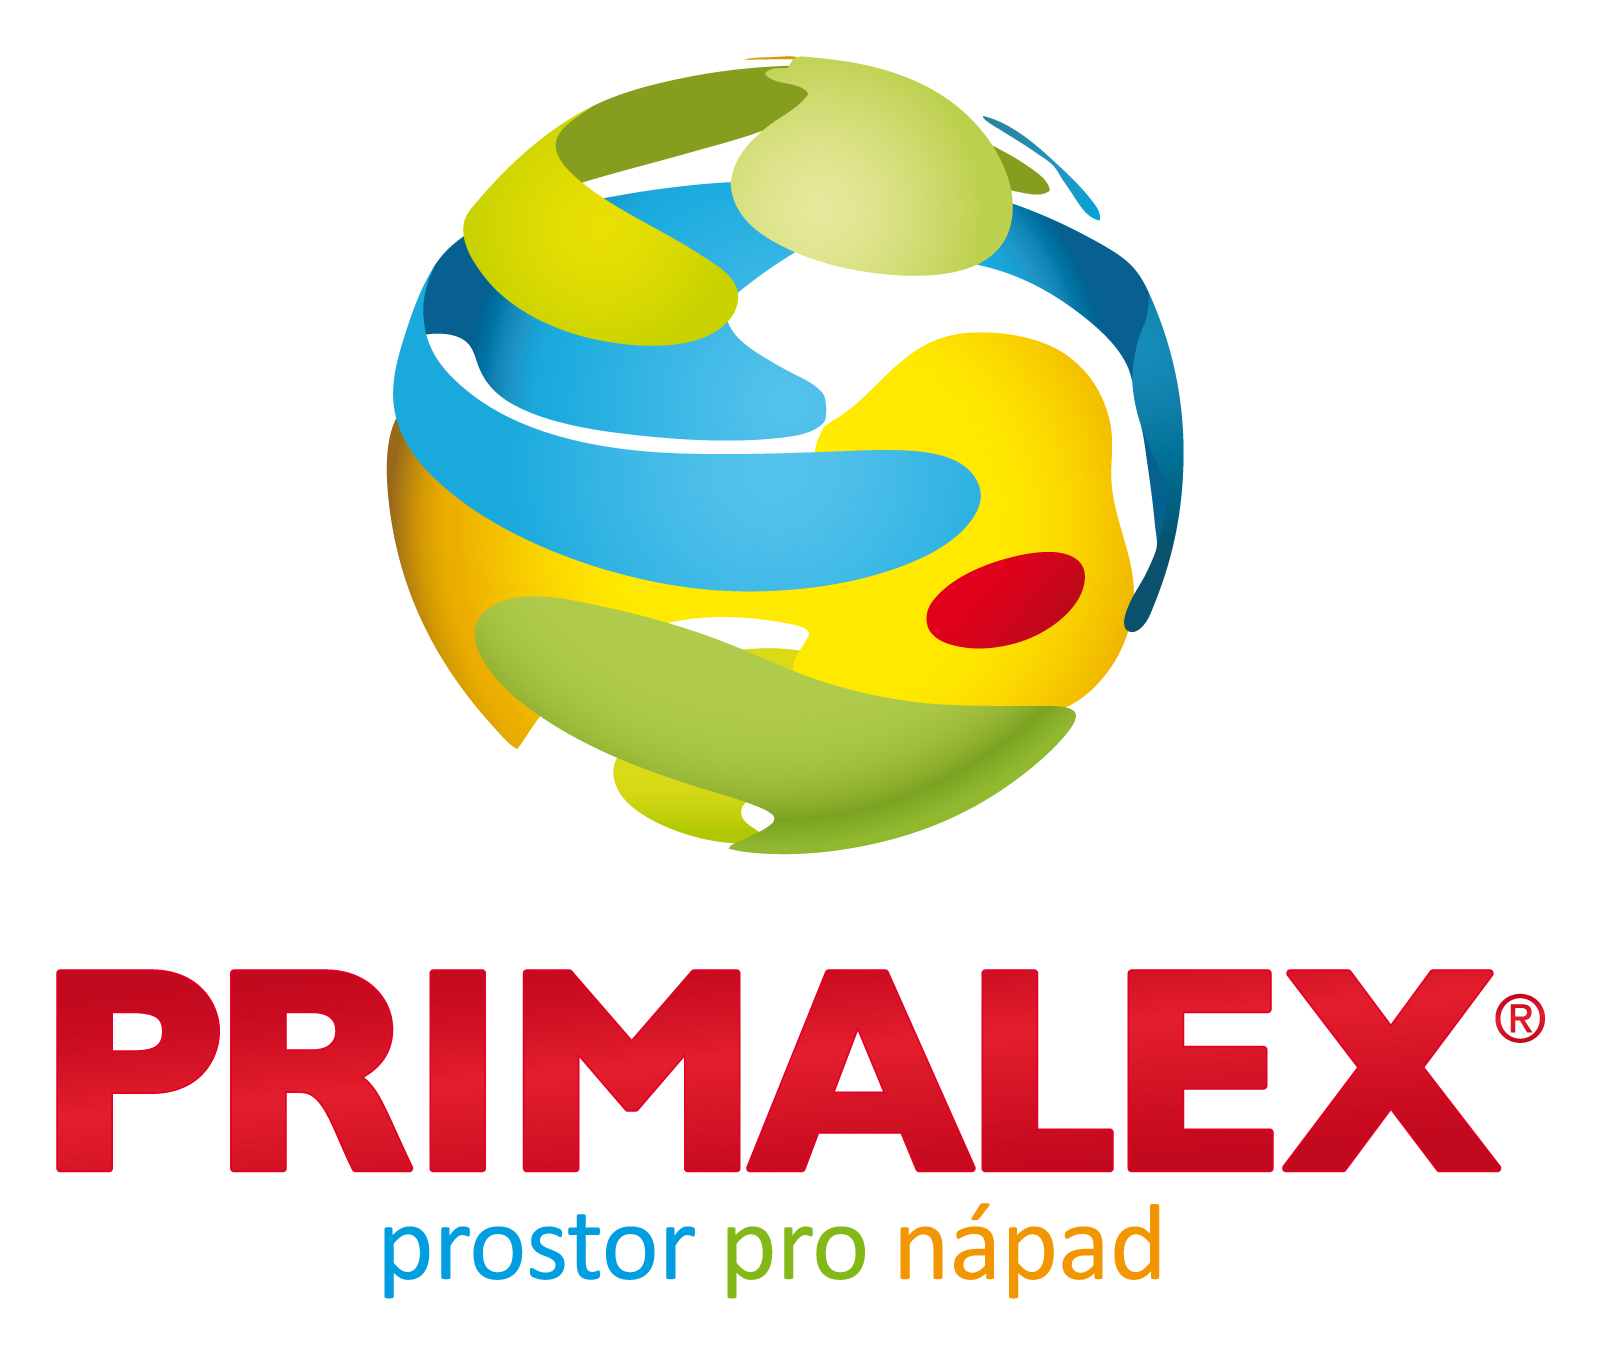 PRIMALEX